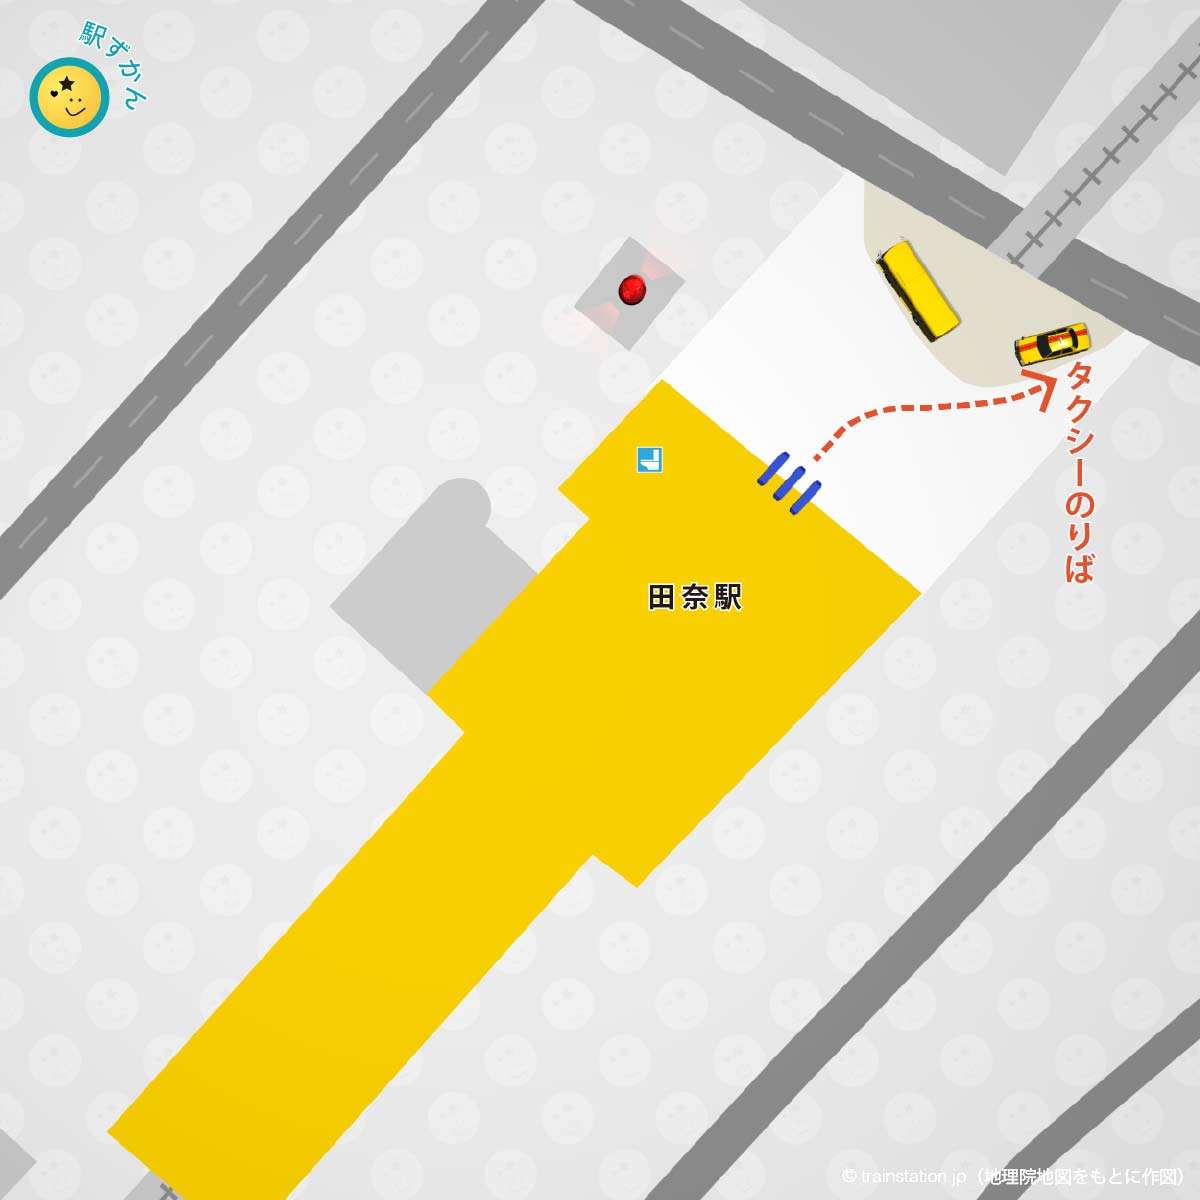 田奈駅タクシー乗り場マップ